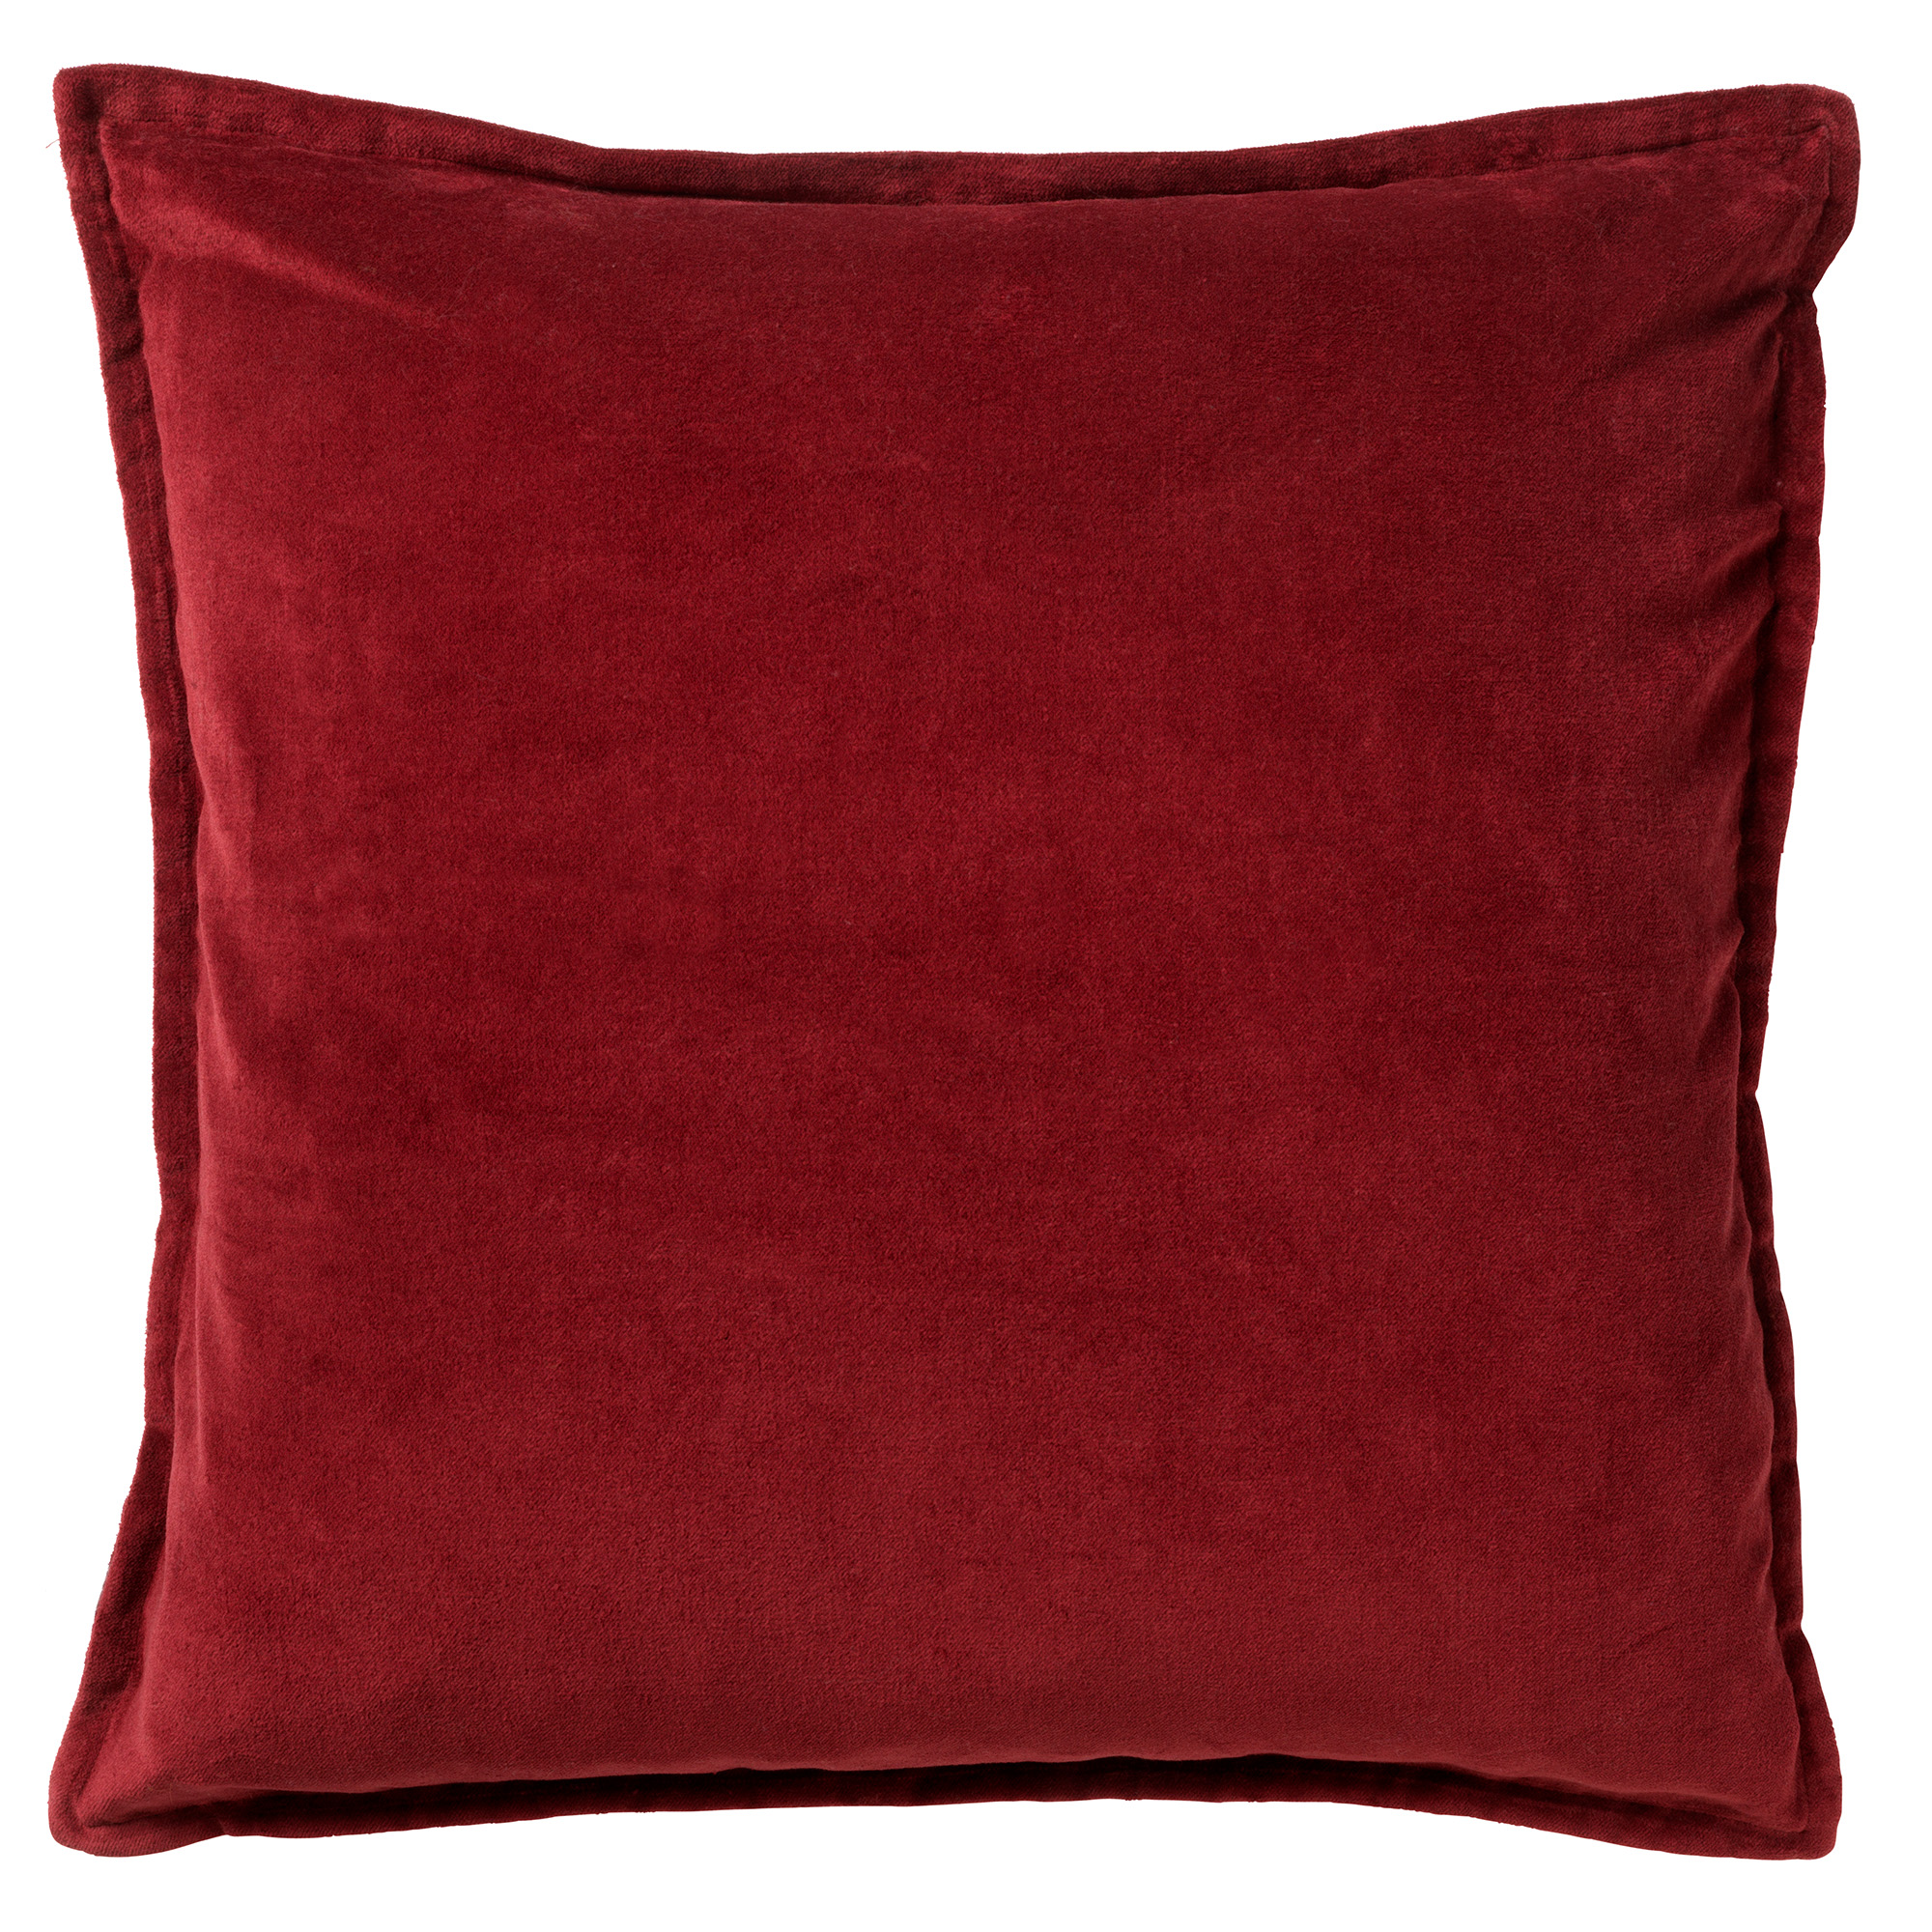 CAITH - Kussenhoes 100% katoen velvet  50x50 cm - Merlot - rood